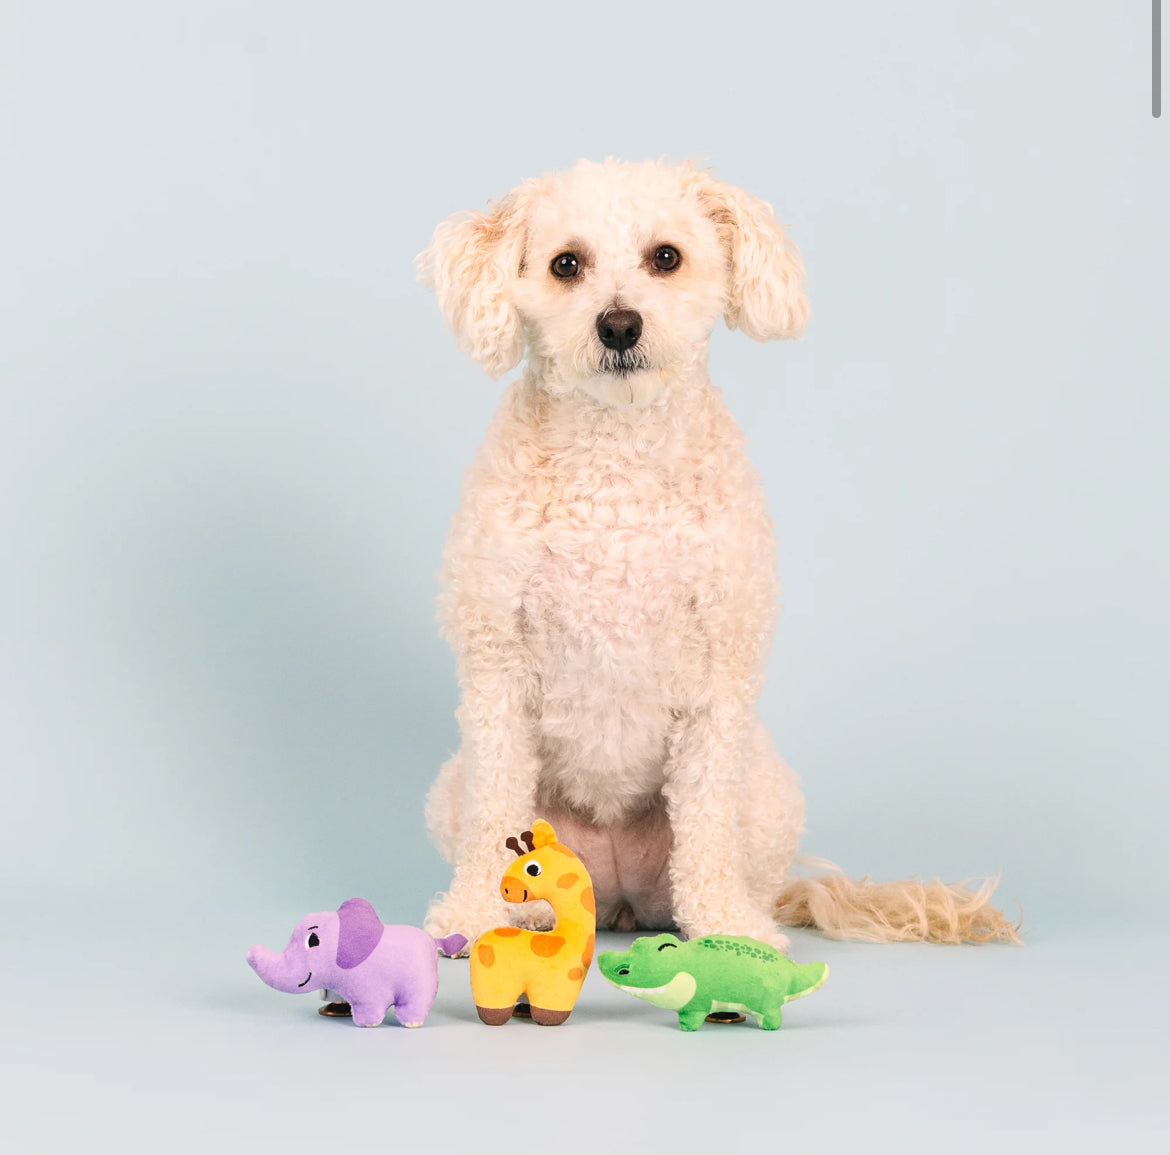 Wild Times Small Plush Dog Toys, Set of 3